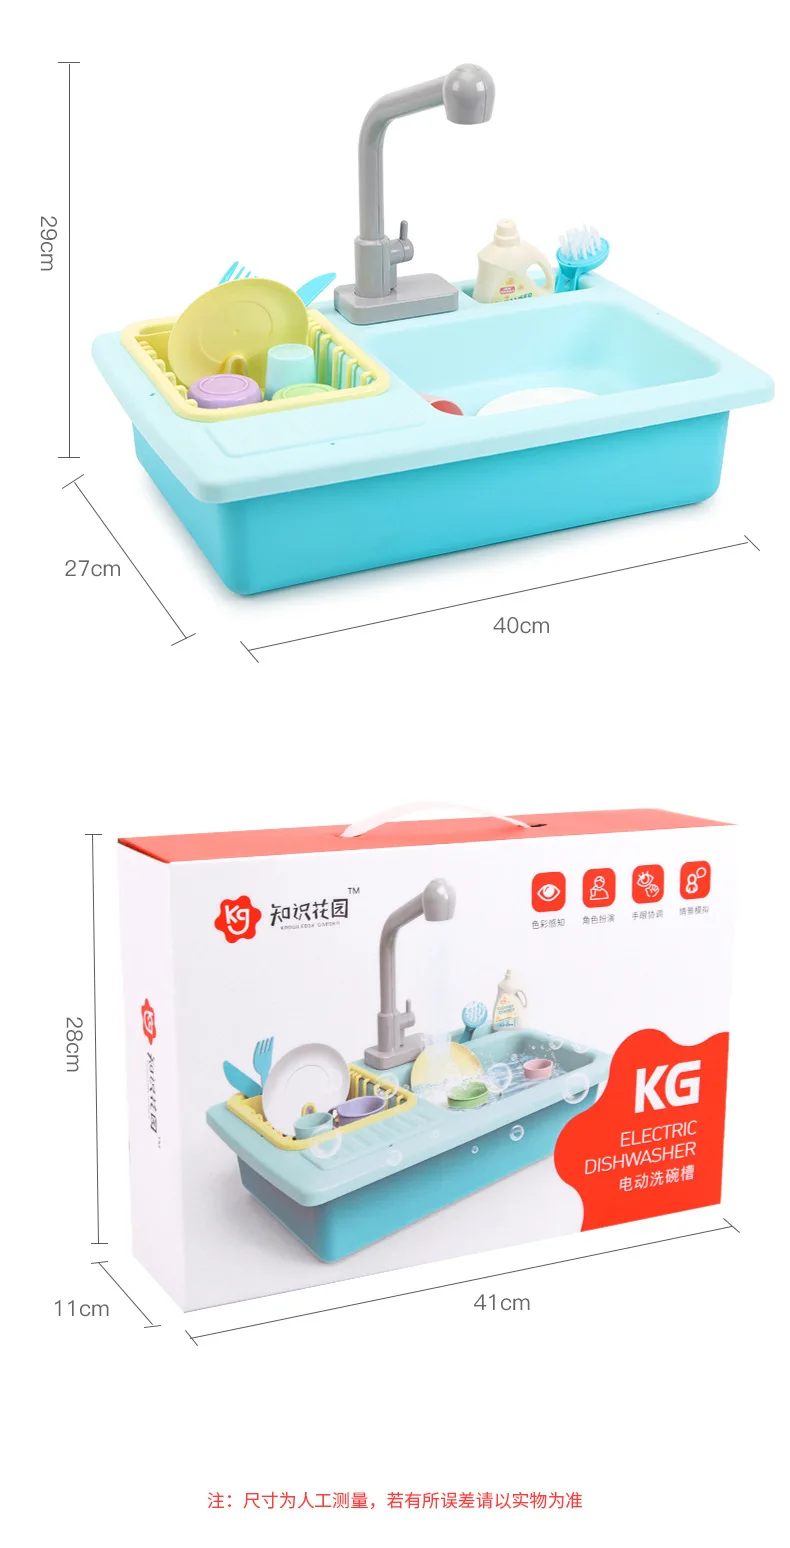 Пластиковая имитация, Электрическая Мойка для посудомоечной машины, игрушки с кухонным набором для приготовления пищи, подарок на день рождения для девочки, игровая игрушка для детей